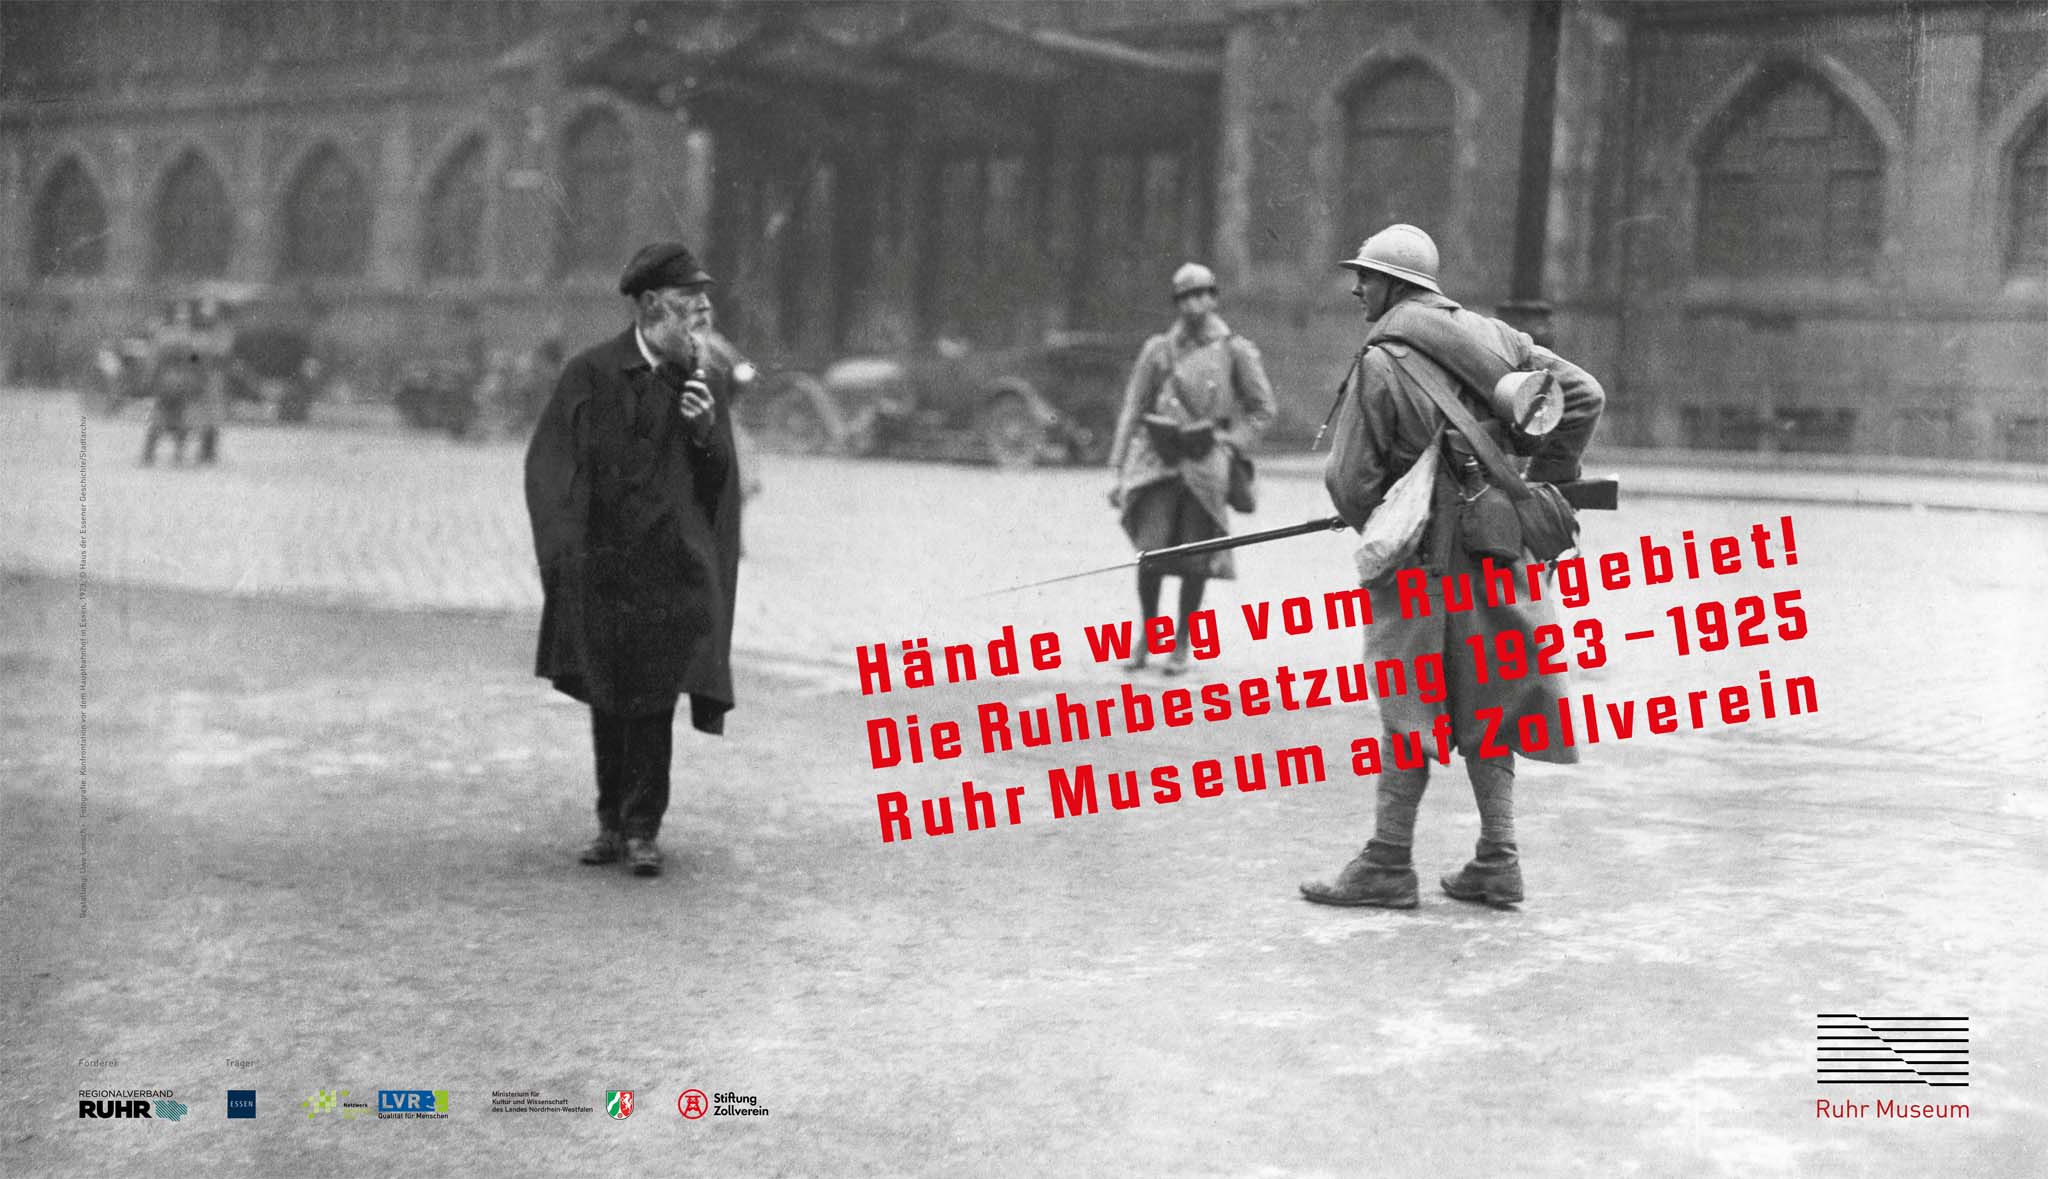 Hände weg vom Ruhrgebiet! Die Ruhrbesetzung 1923 - 1925